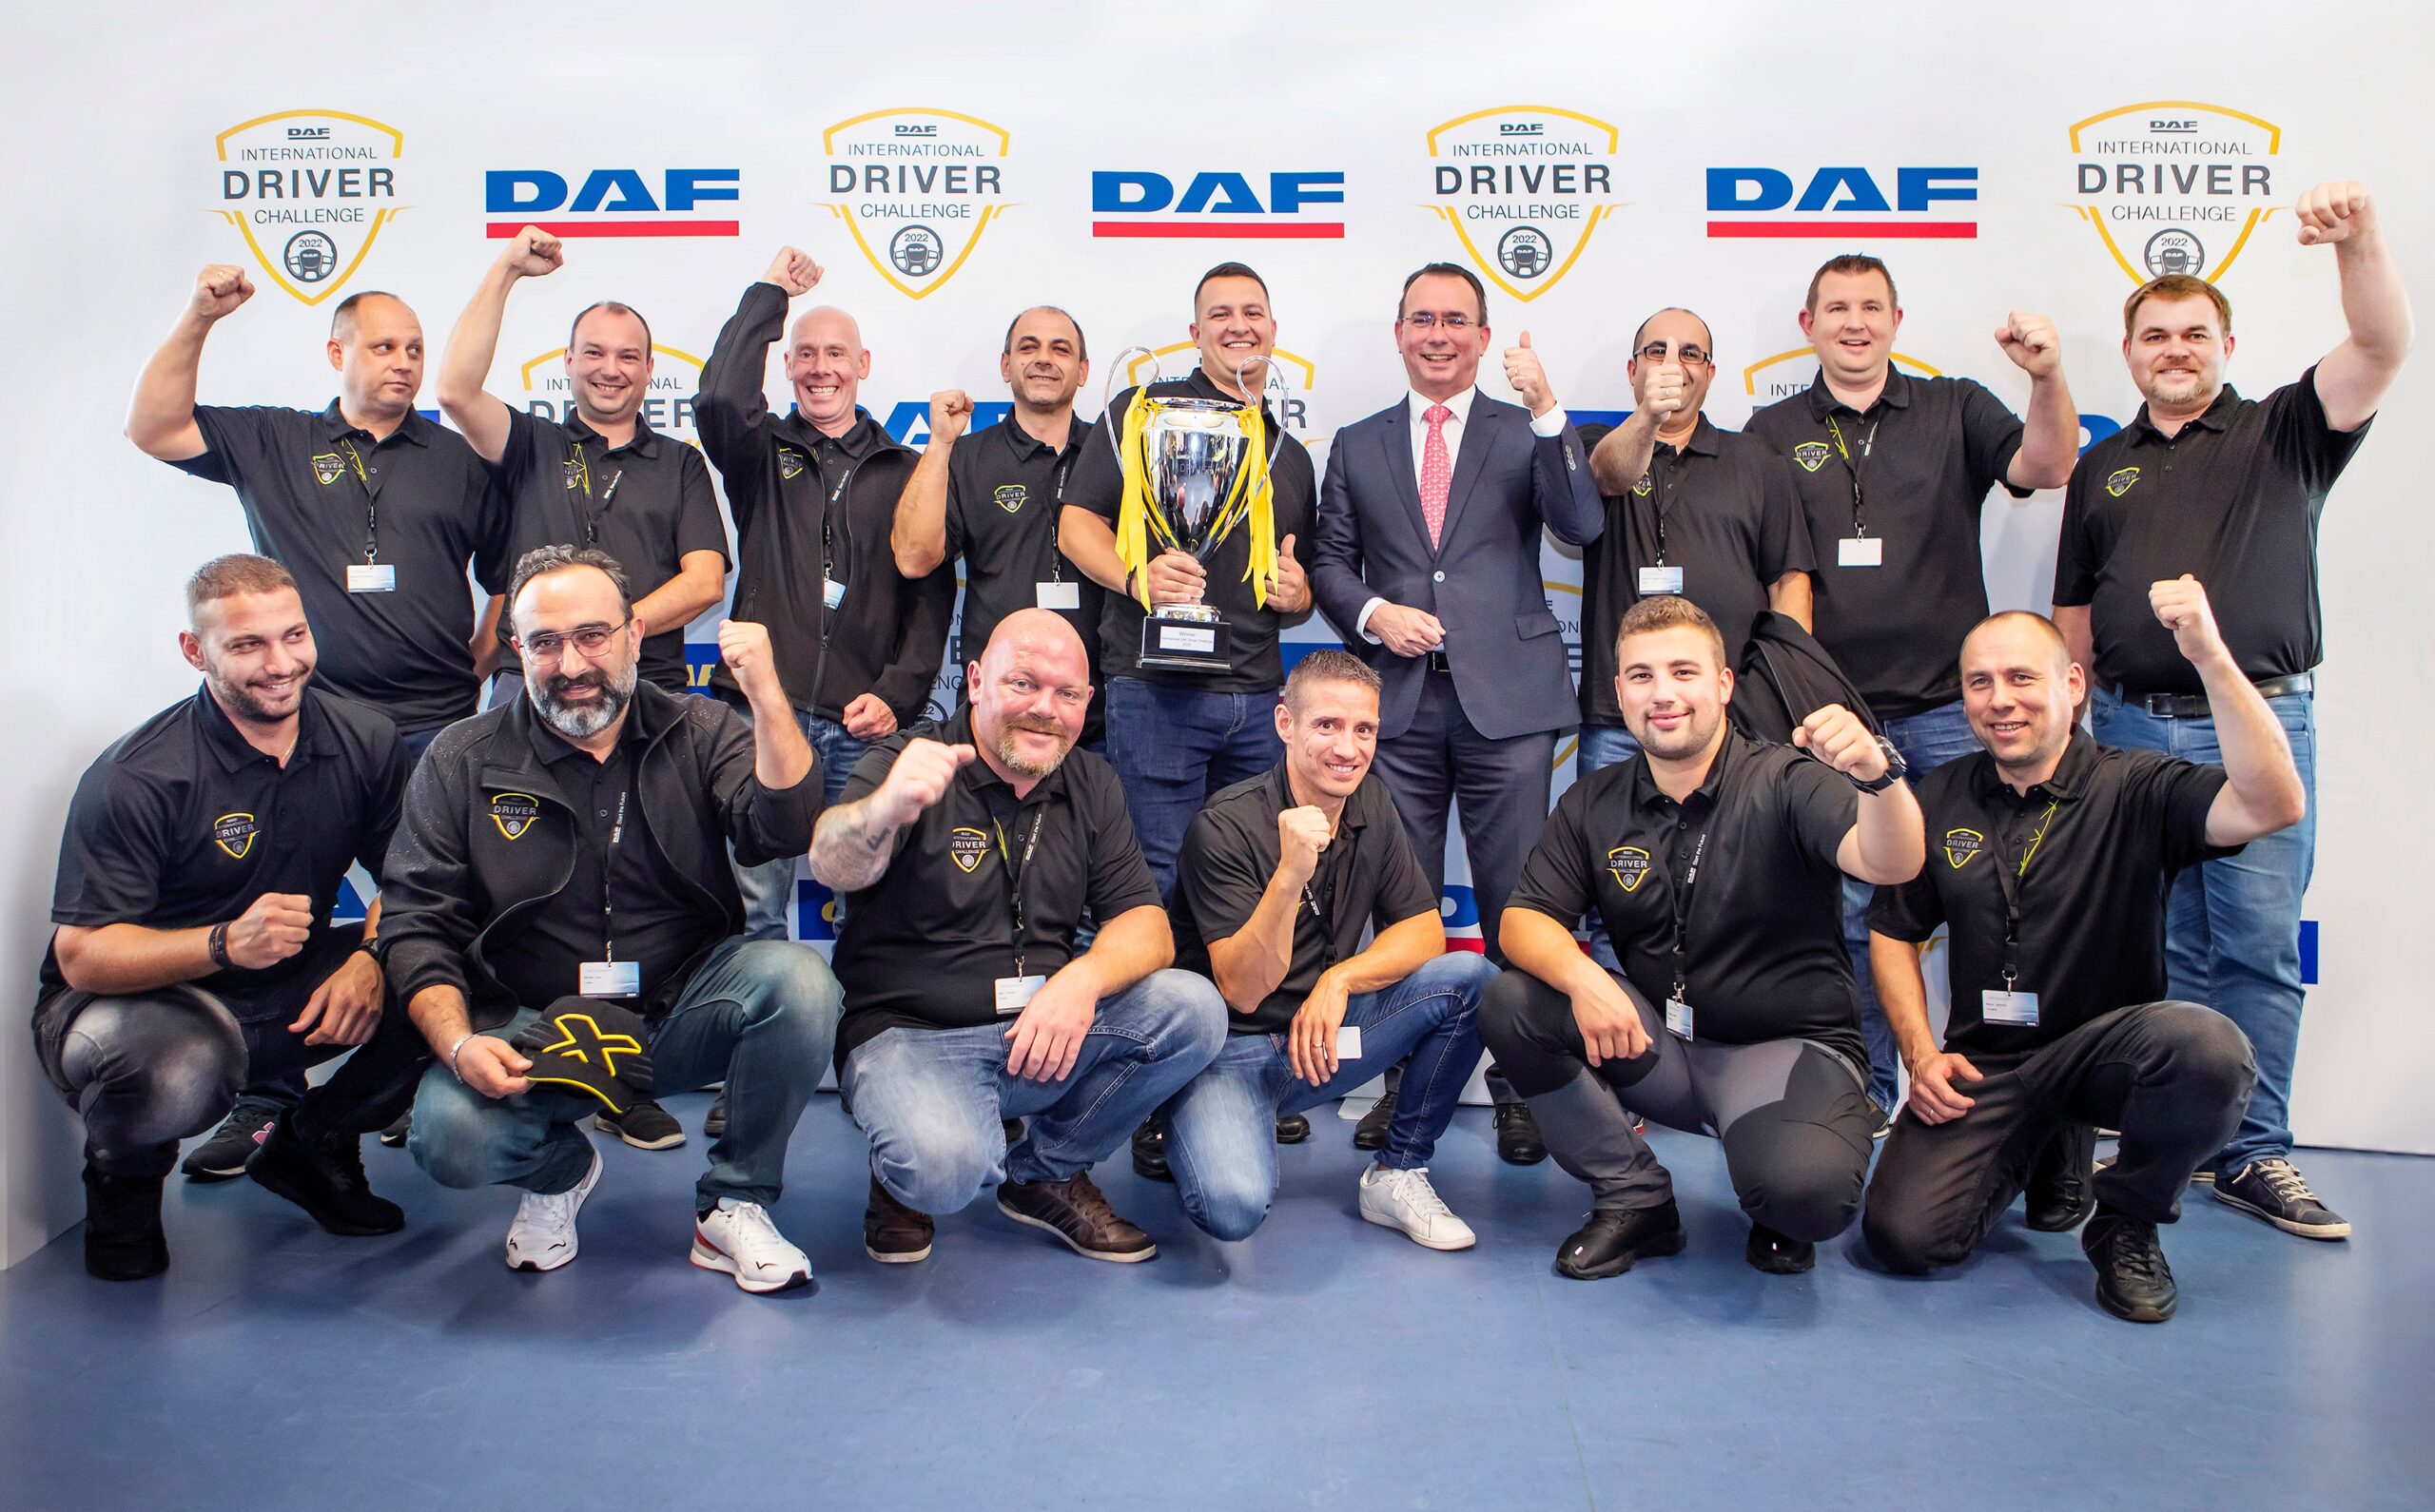 Gábor Szabados de Hongrie remporte l’International DAF Driver Challenge 2022